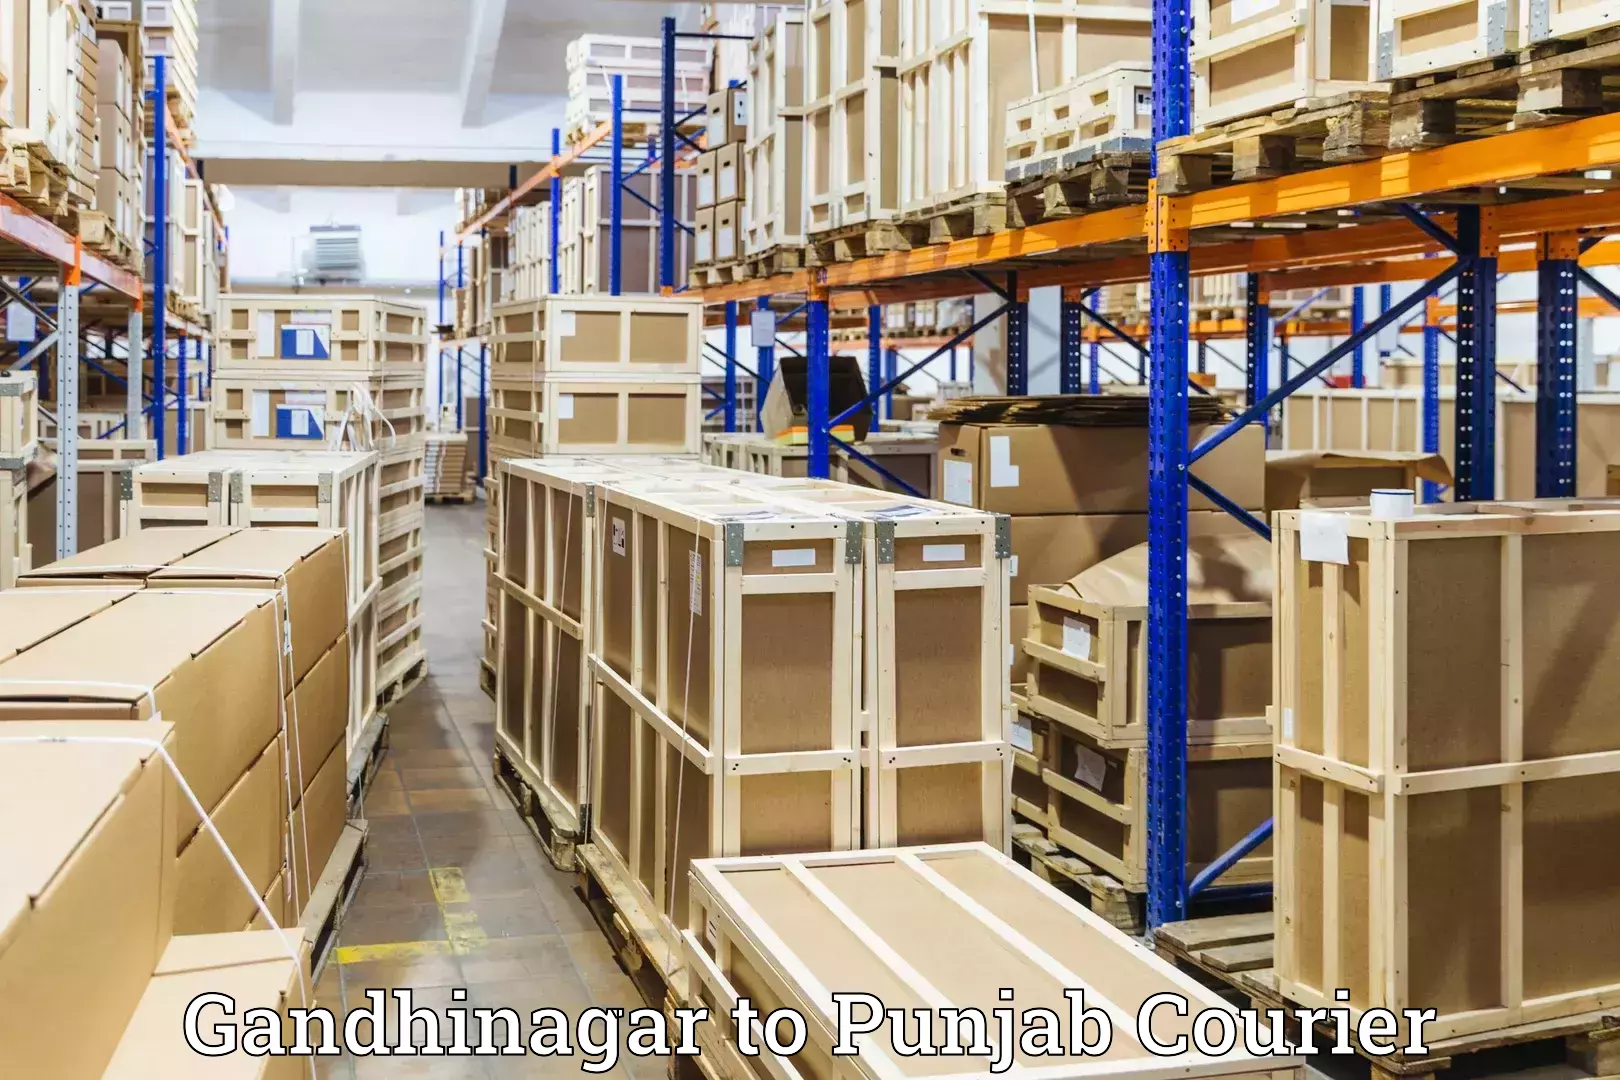 Luggage transport operations Gandhinagar to Punjab